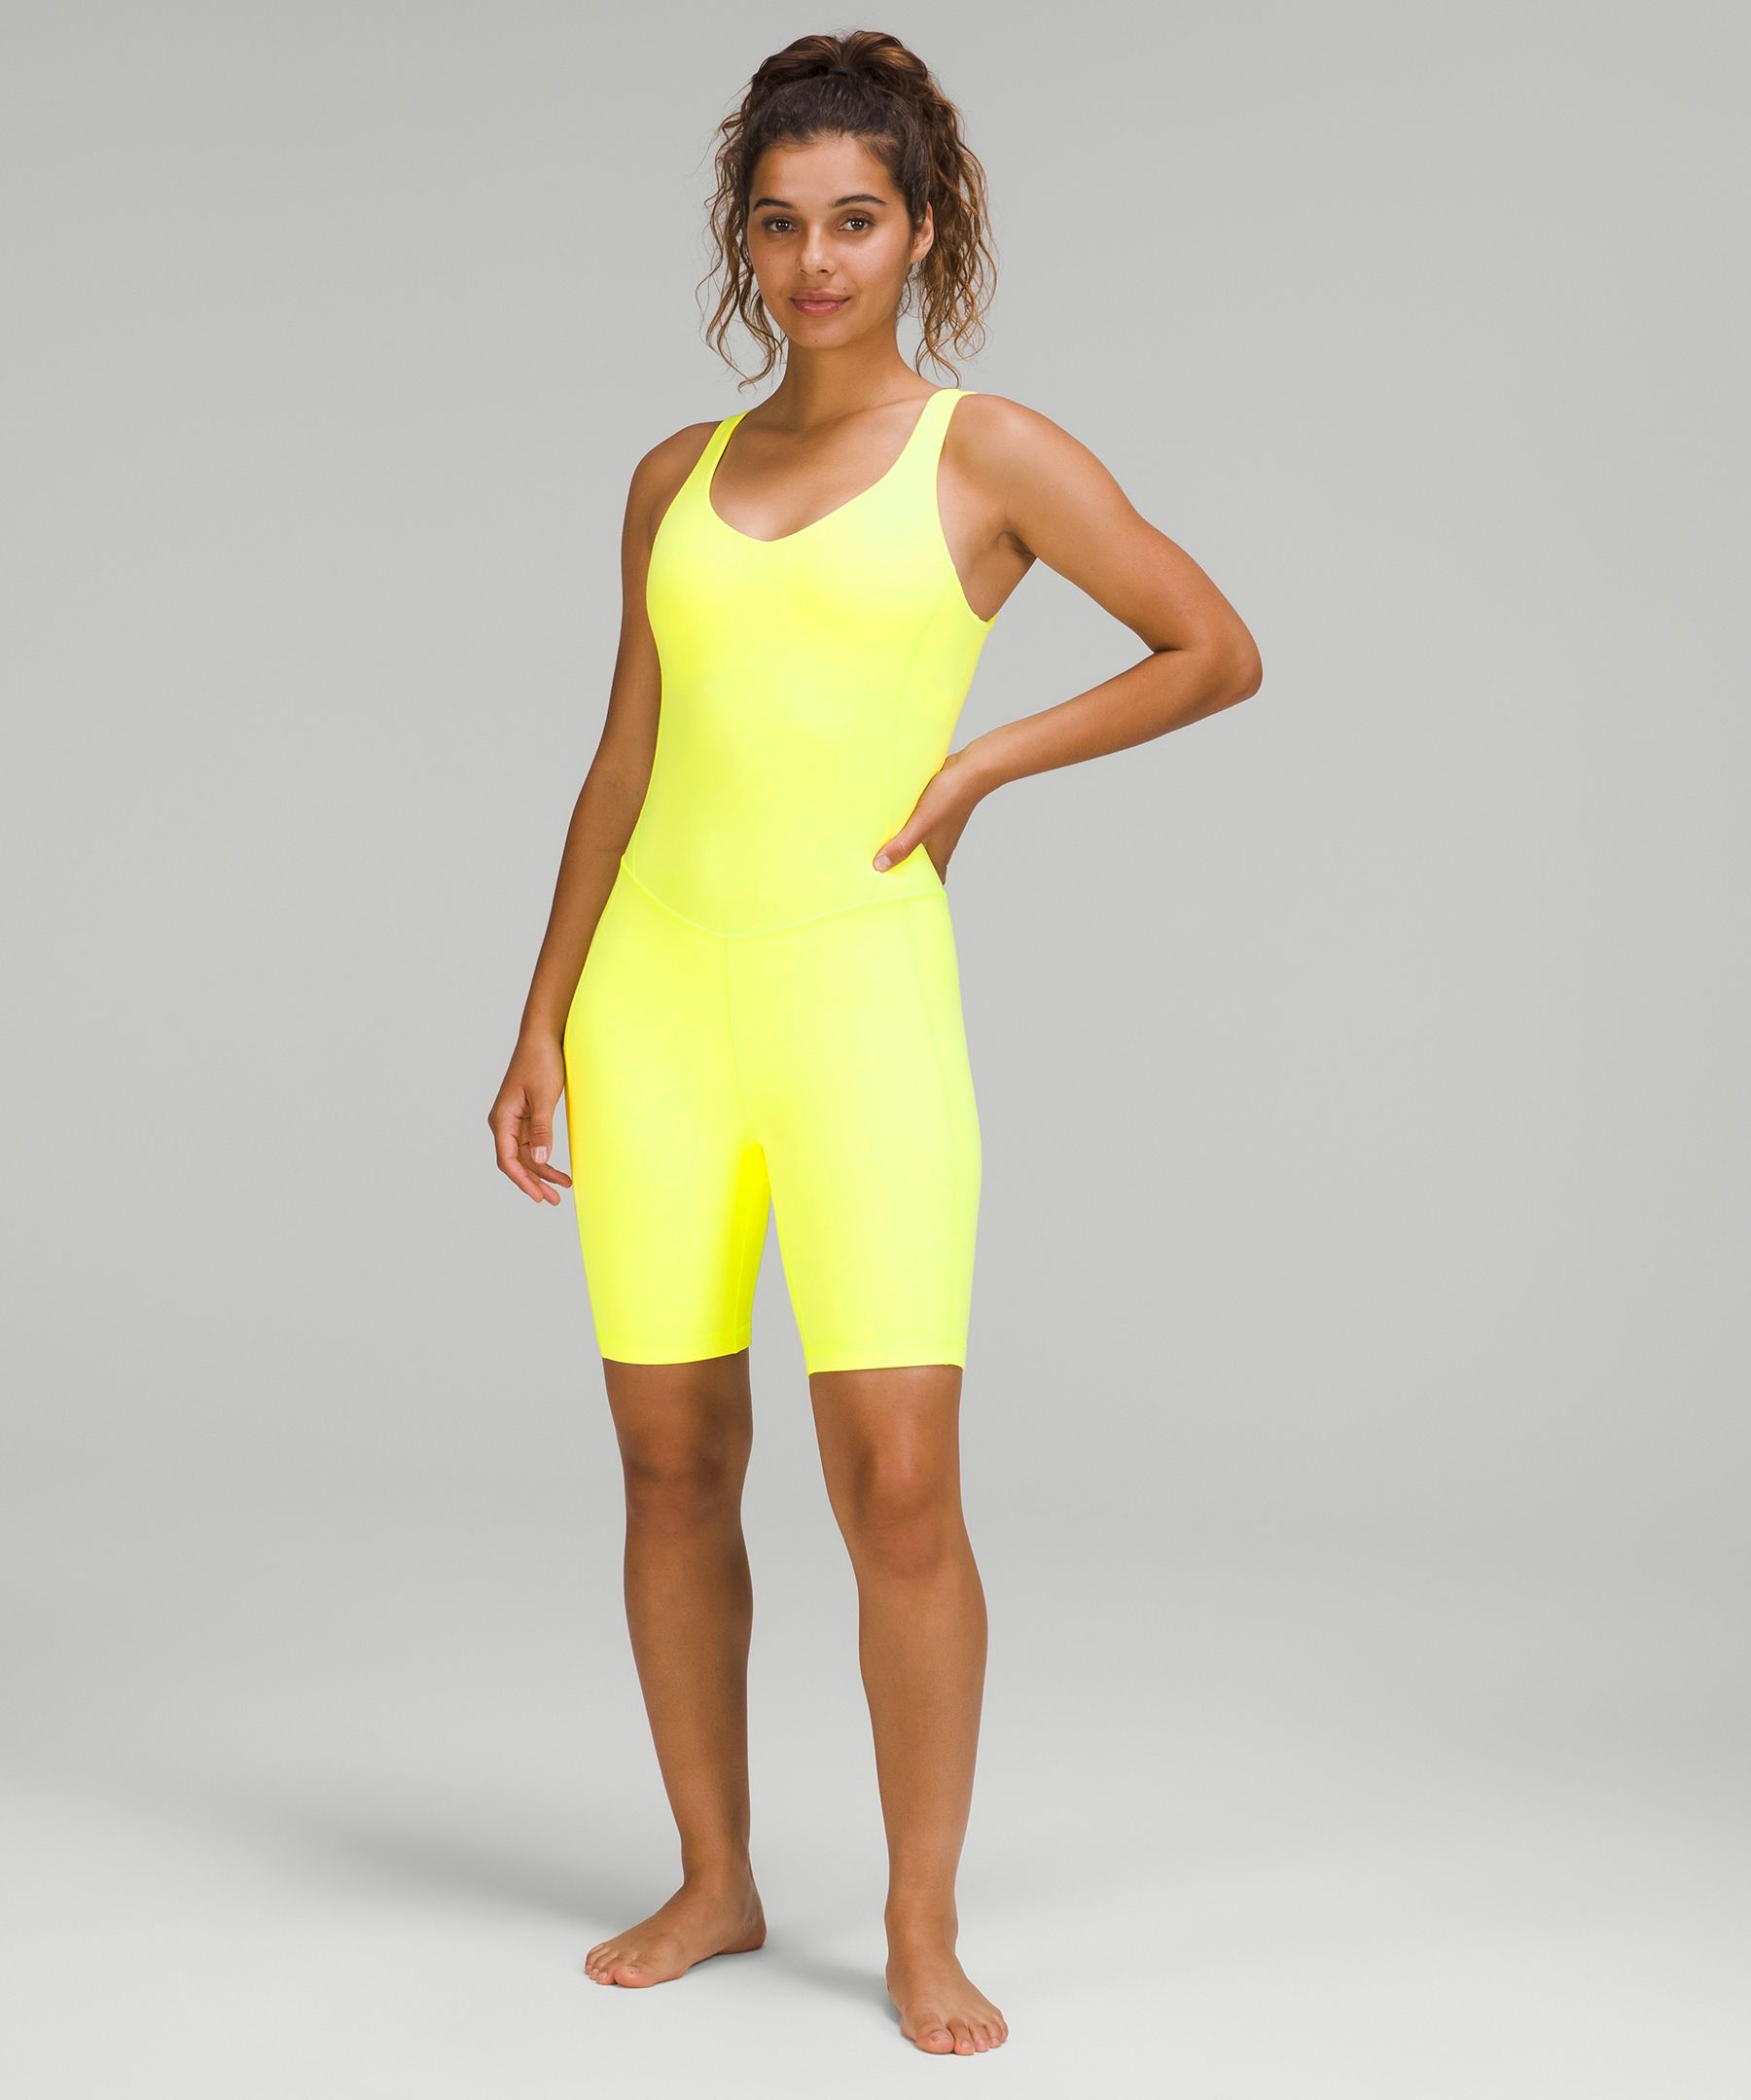 Lululemon Align™ Bodysuit 8" In Electric Lemon